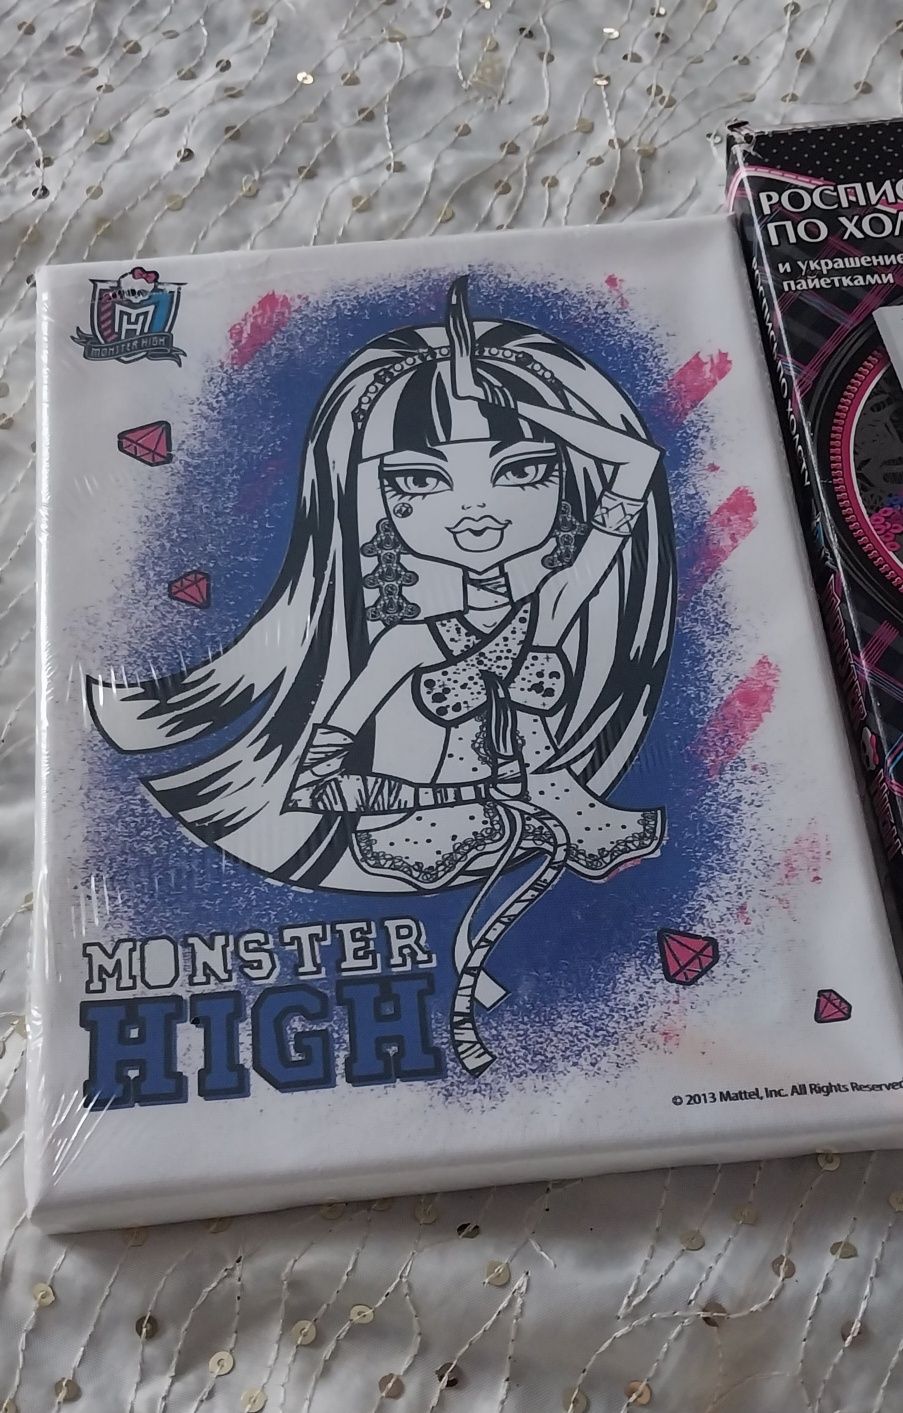 Роспись  по холсту и украшение  пайетками. "Клео" Monster High.